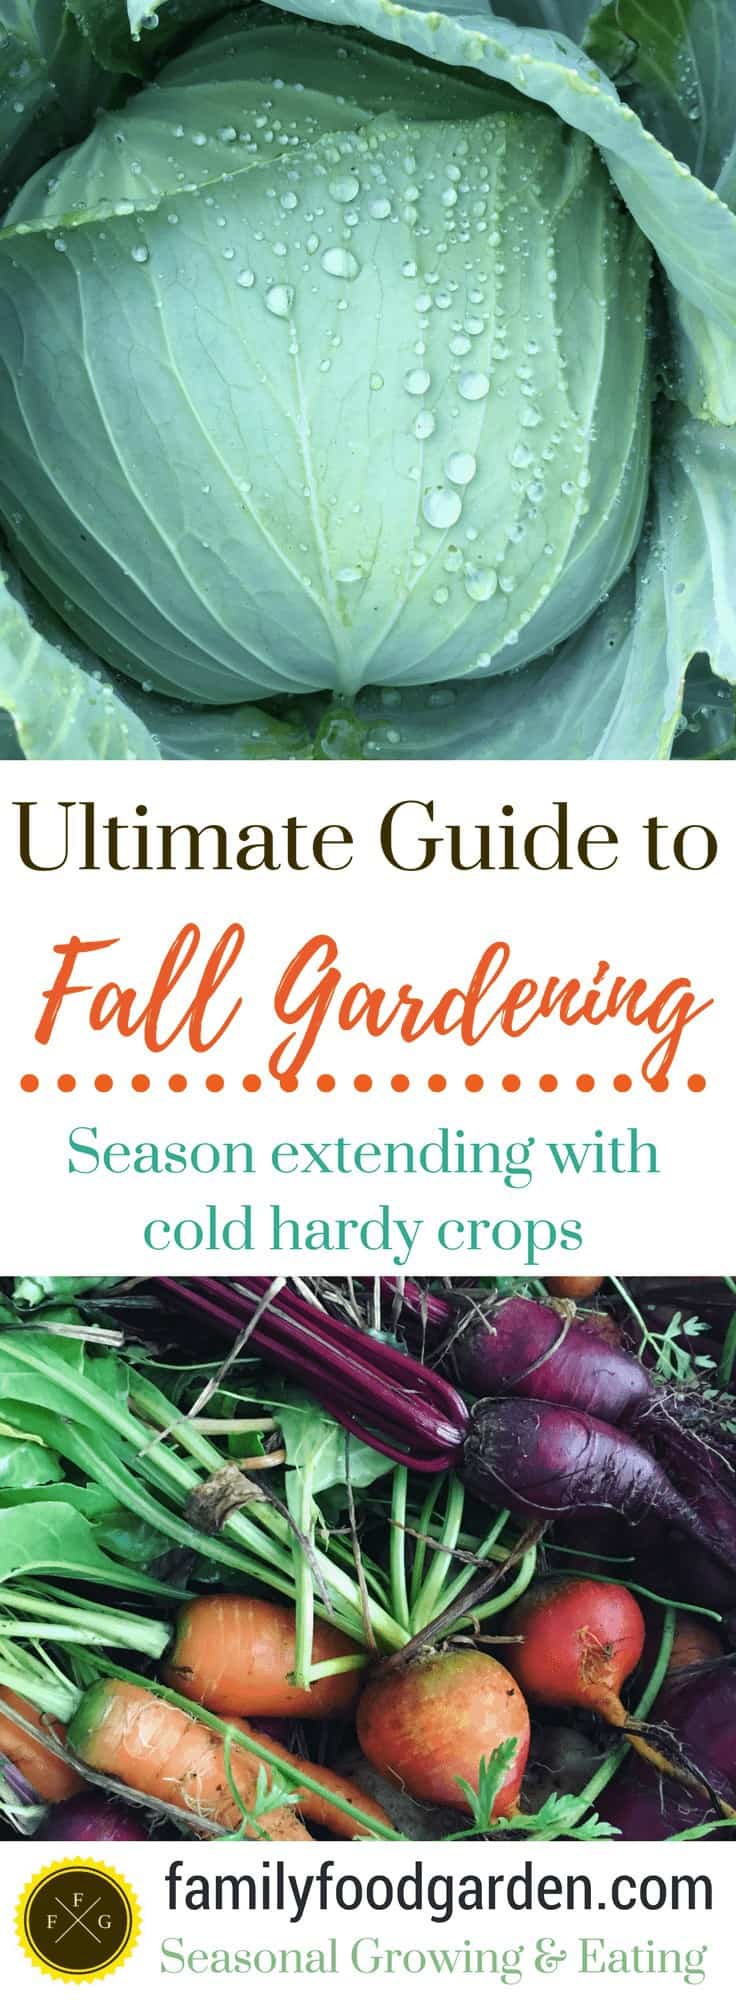 Fall Gardening